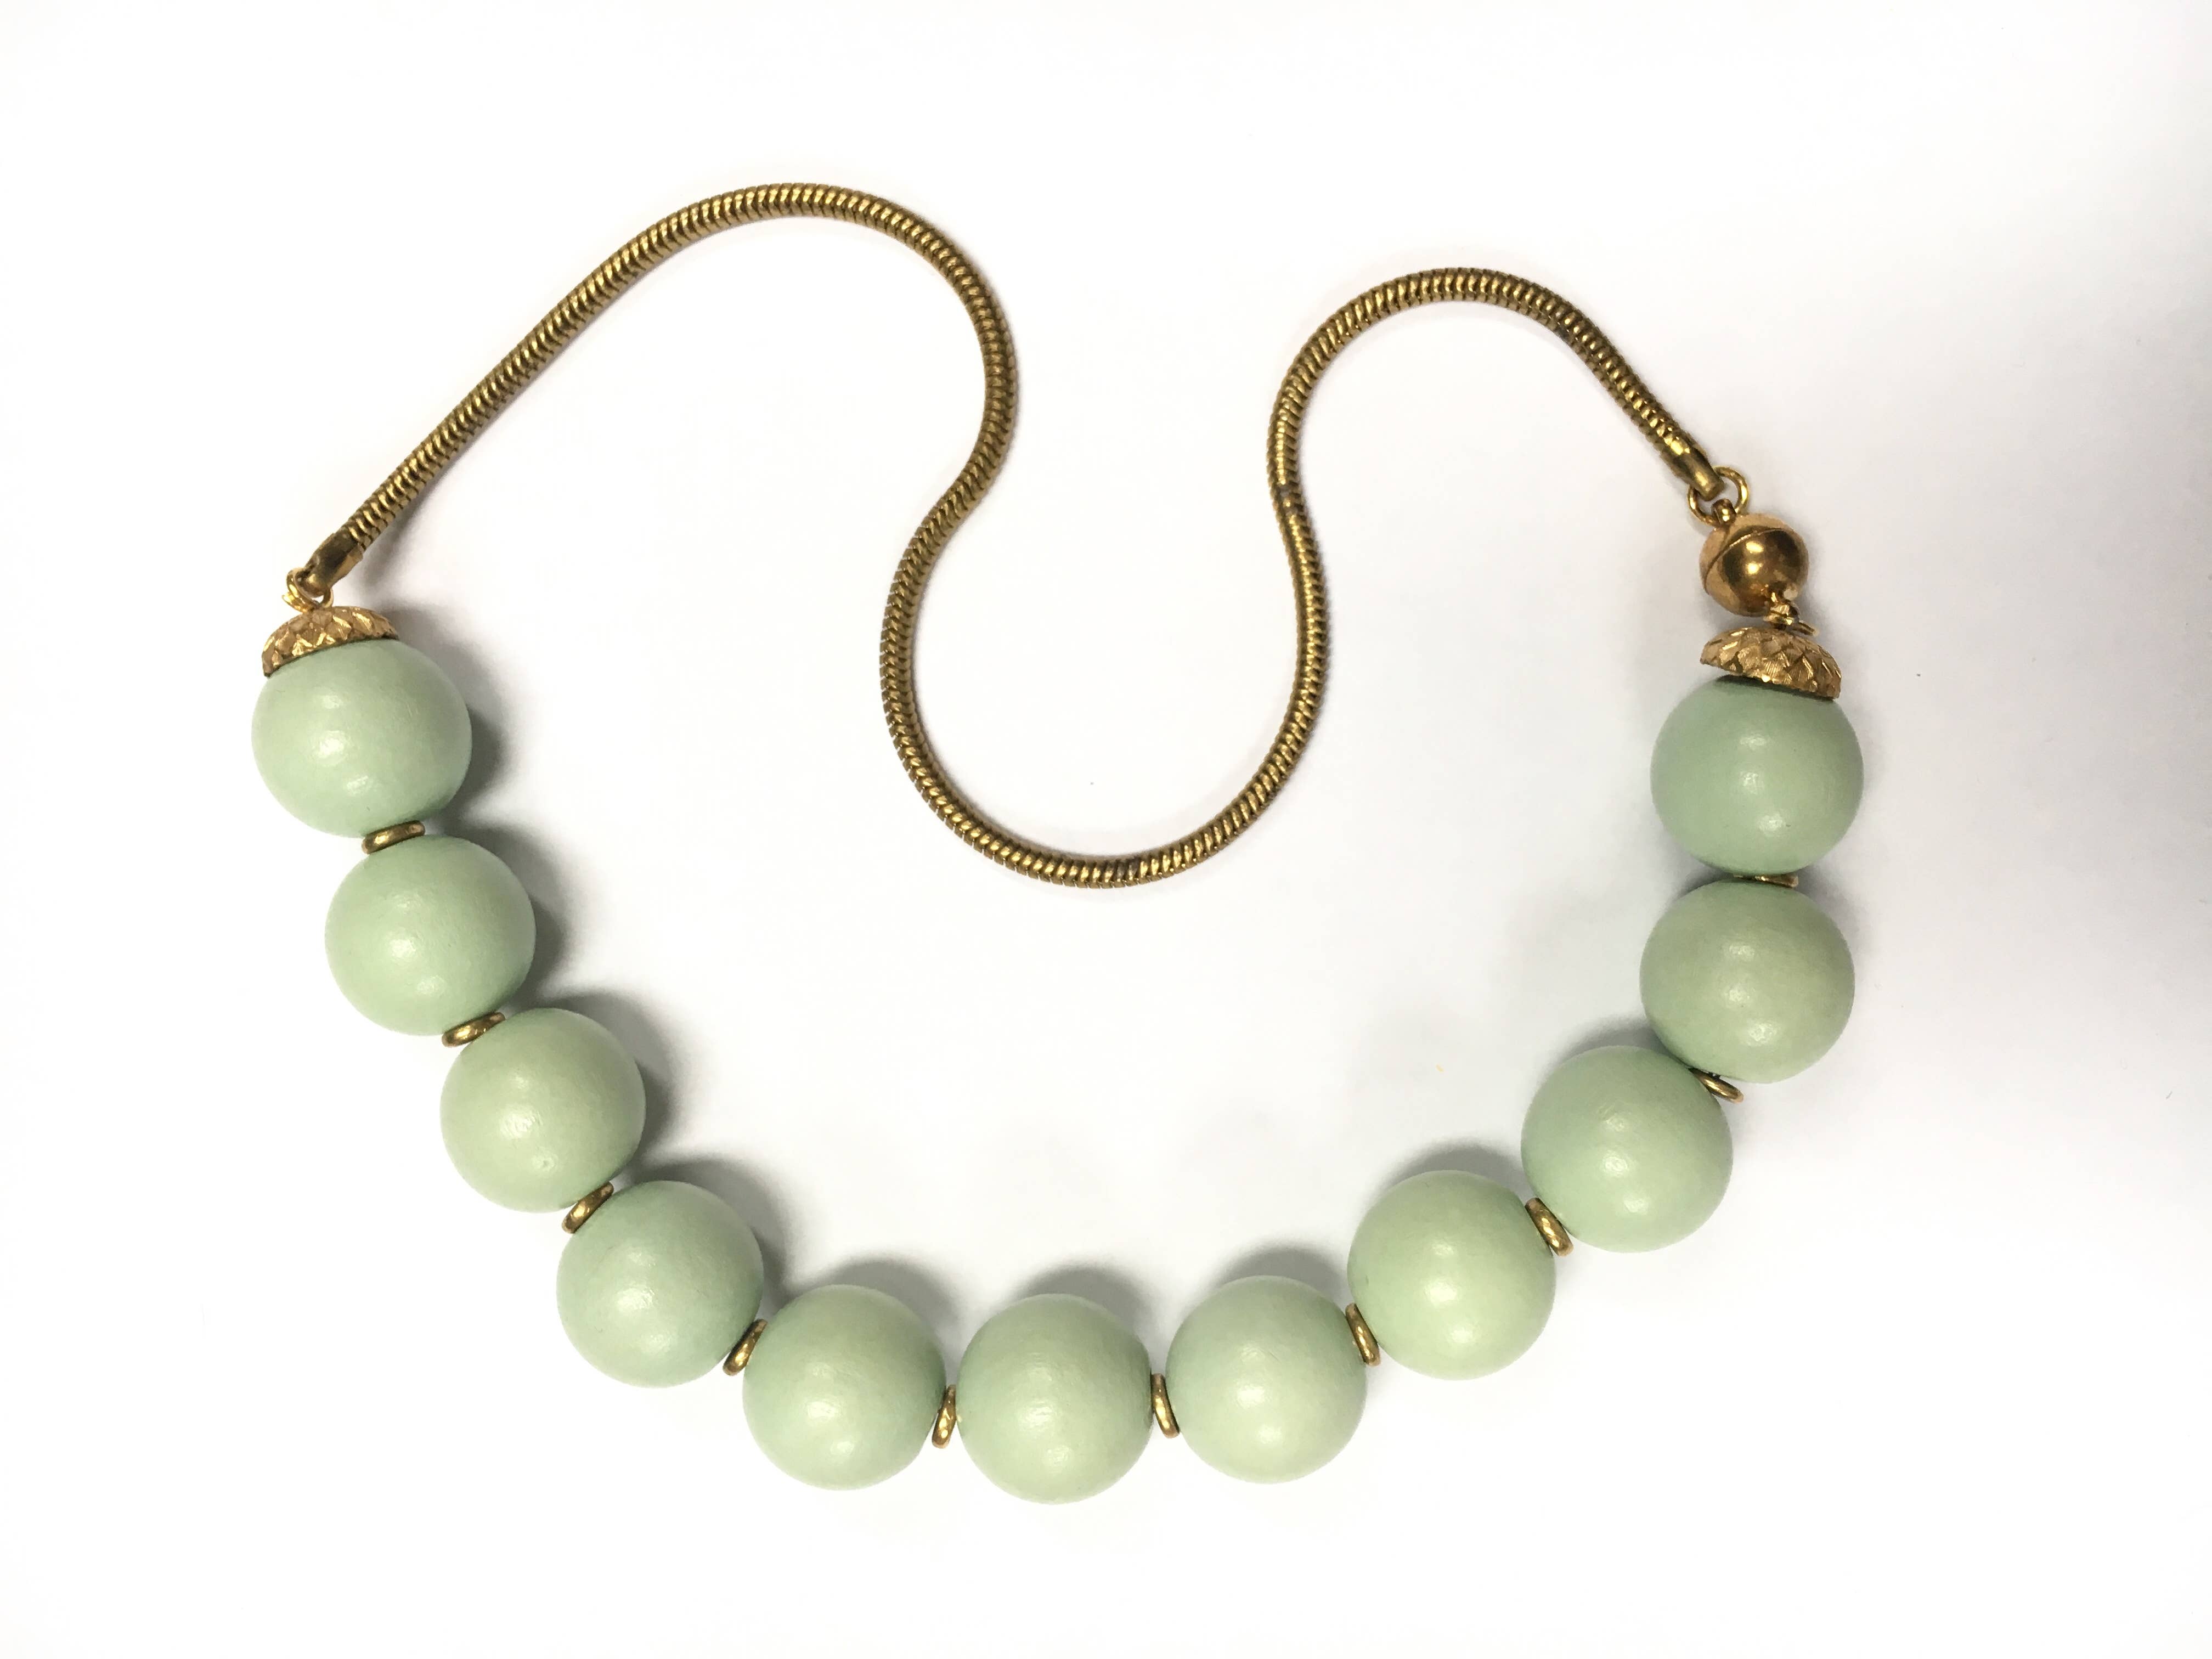 14 mm 100% naturel rouge jade jadeite RONDE pierres précieuses perles bracelet jonc 